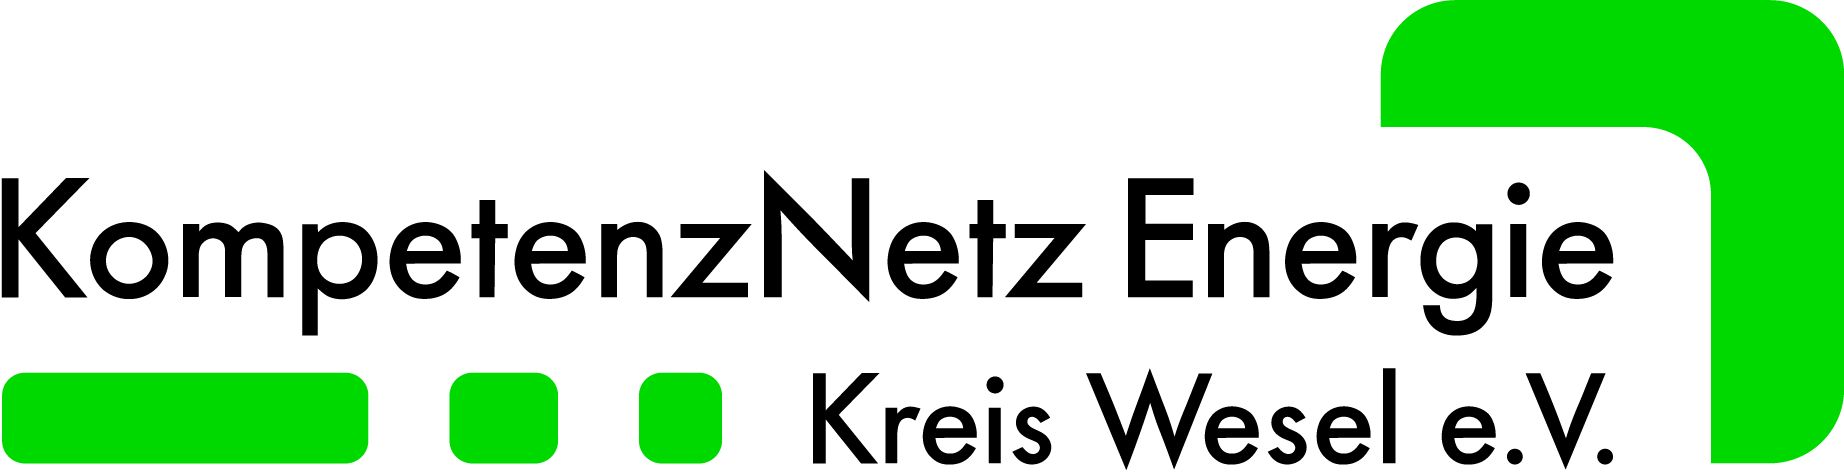 KompetenzNetz Energie Kreis Wesel e. V.